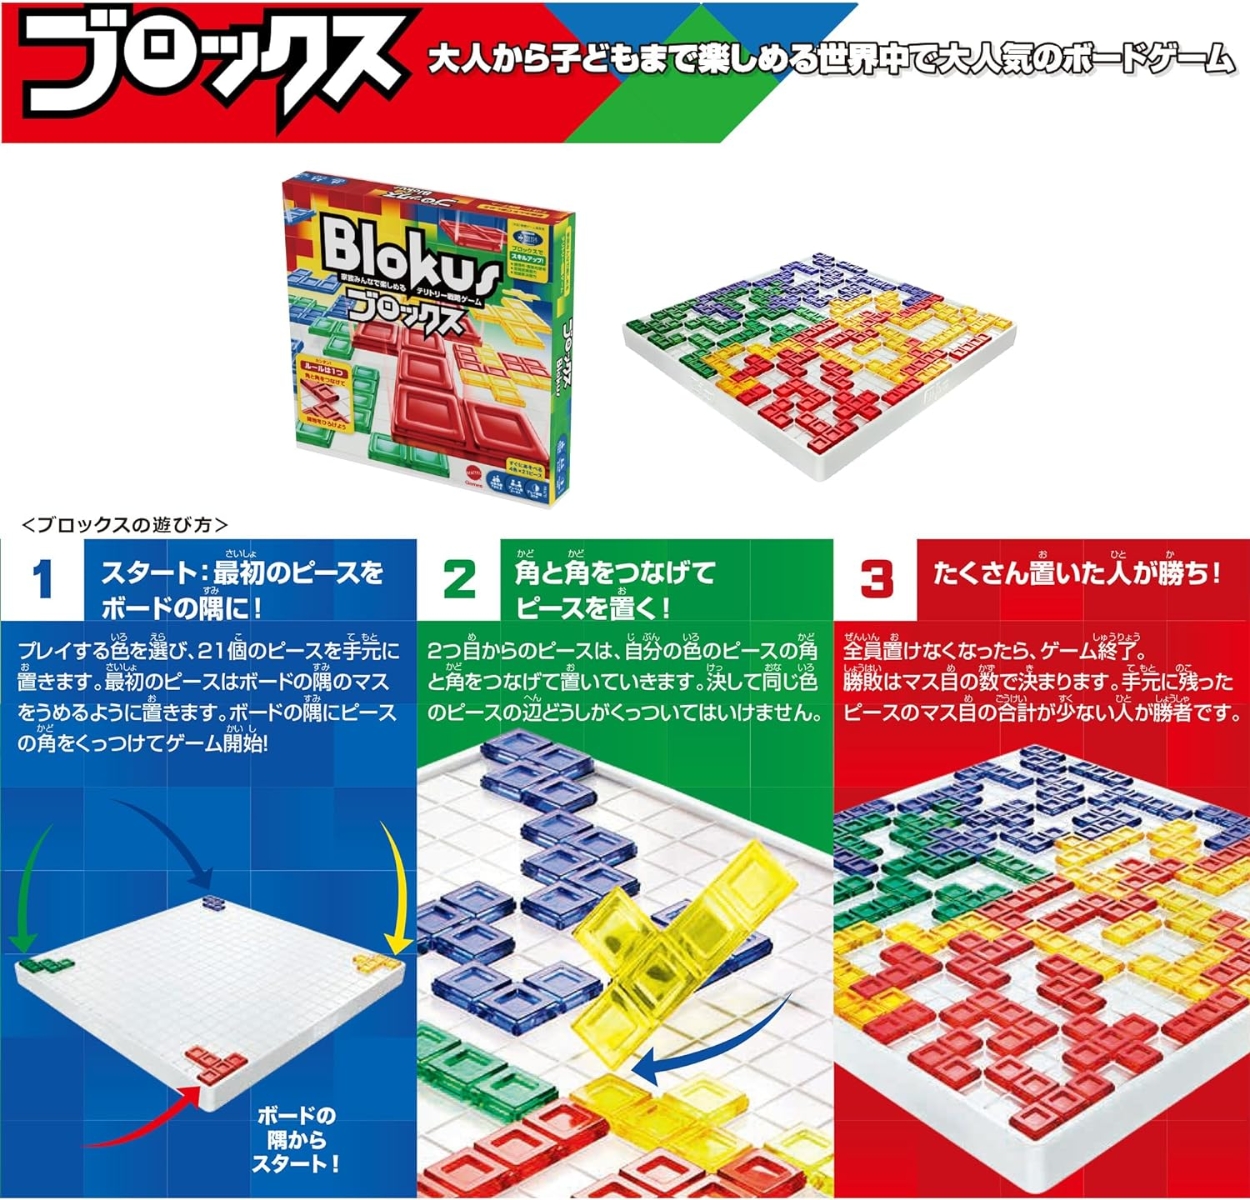 マテルゲーム(Mattel Game) ブロックス Blokus【知育ゲーム】【ボード 